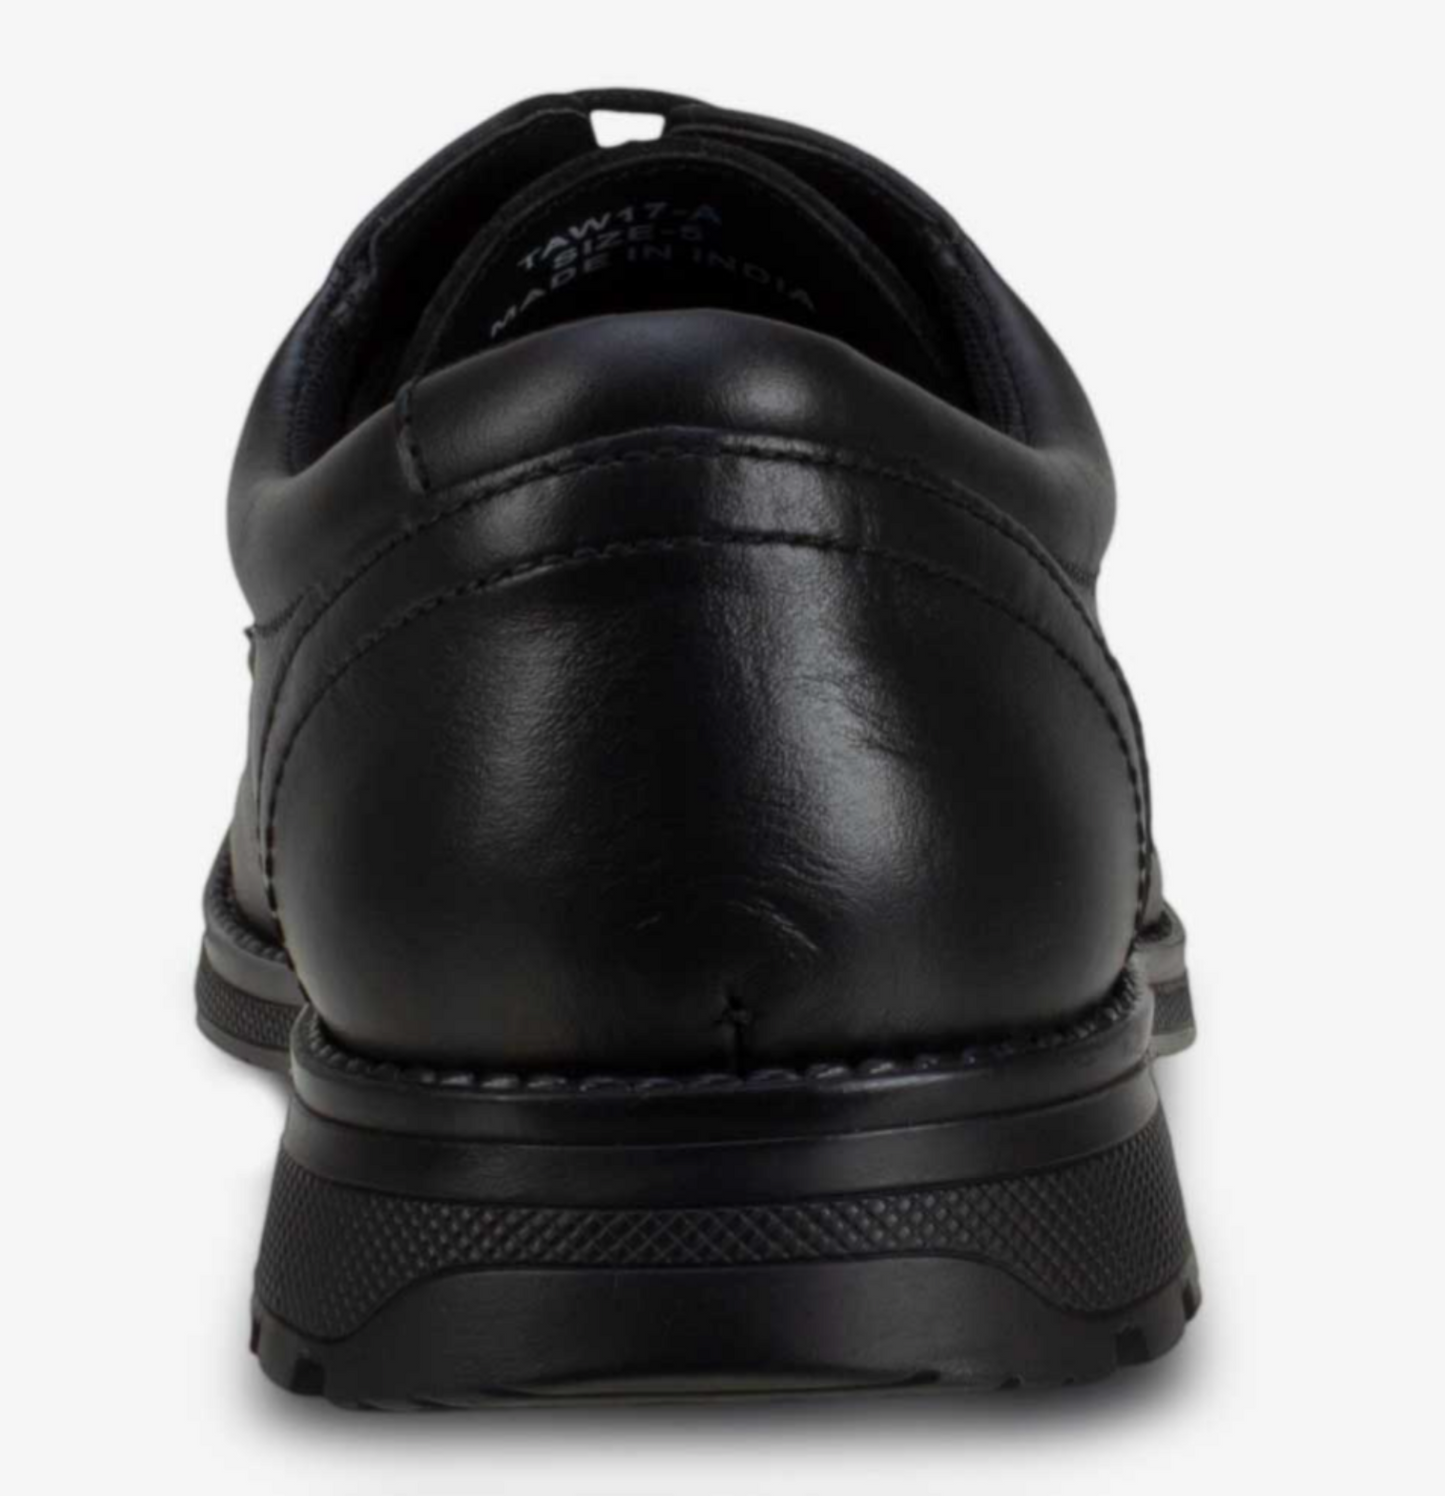 Term Clerk Tyson Black Lace Up School Shoes